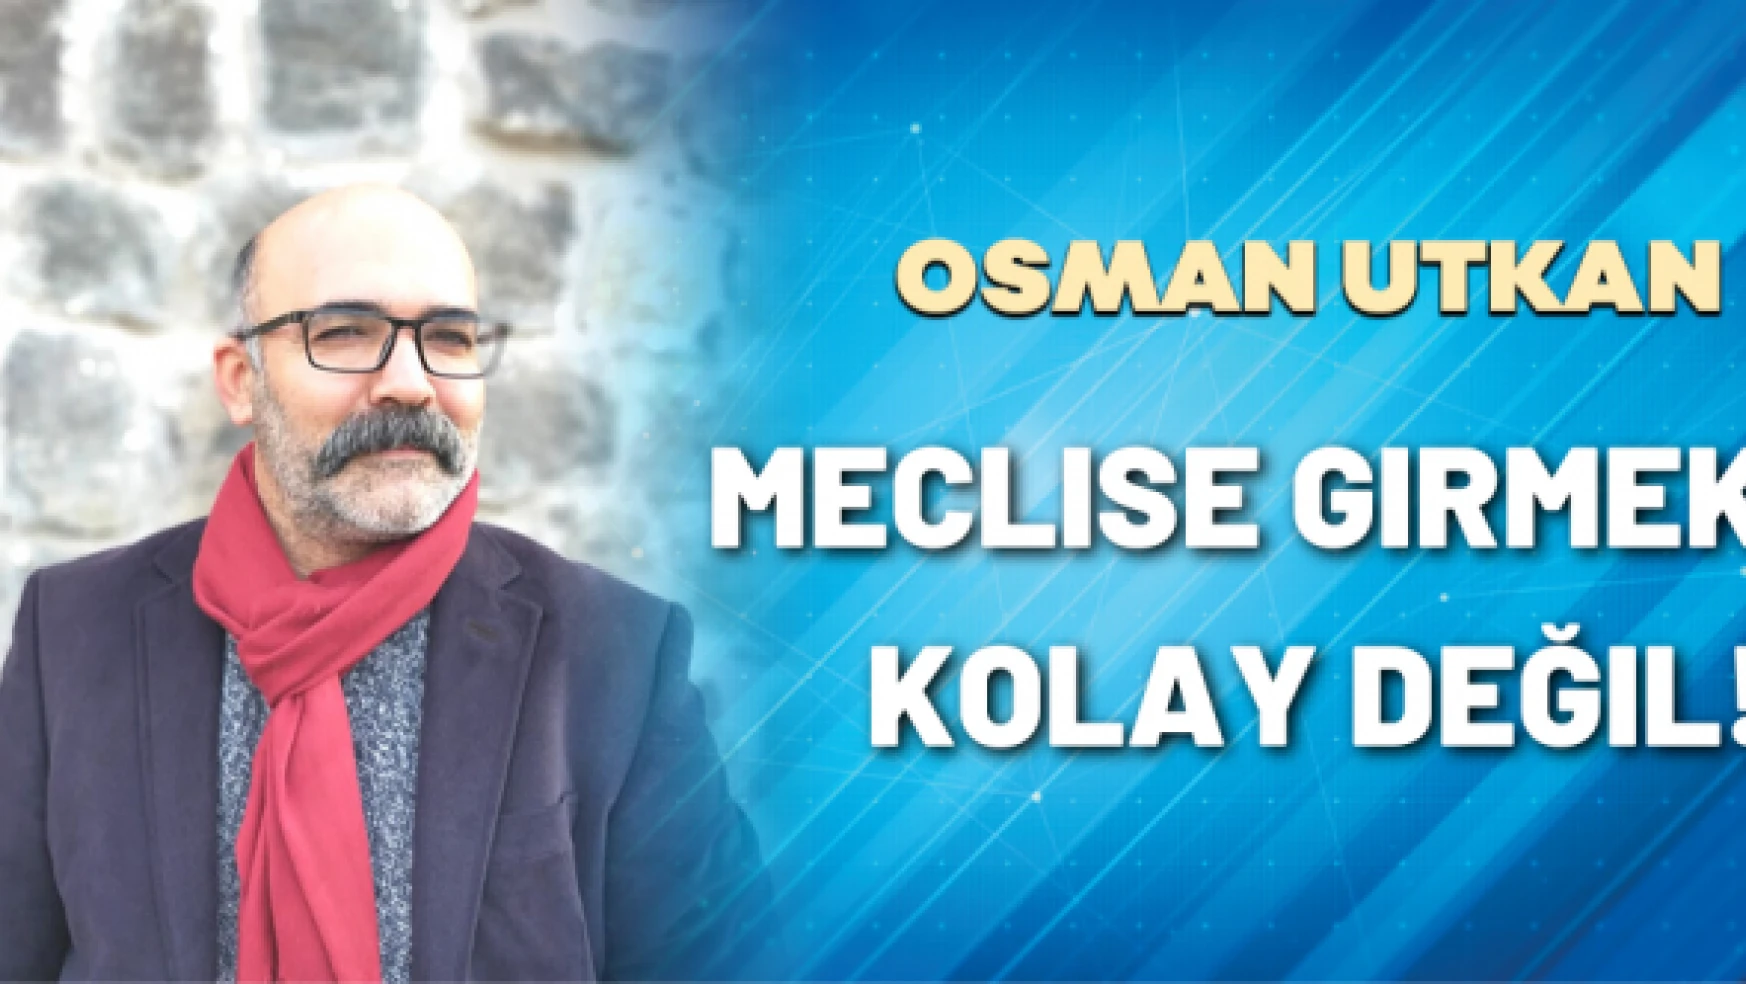 Öğr. Gör. Osman Utkan yazdı: Meclise girmek kolay değil!